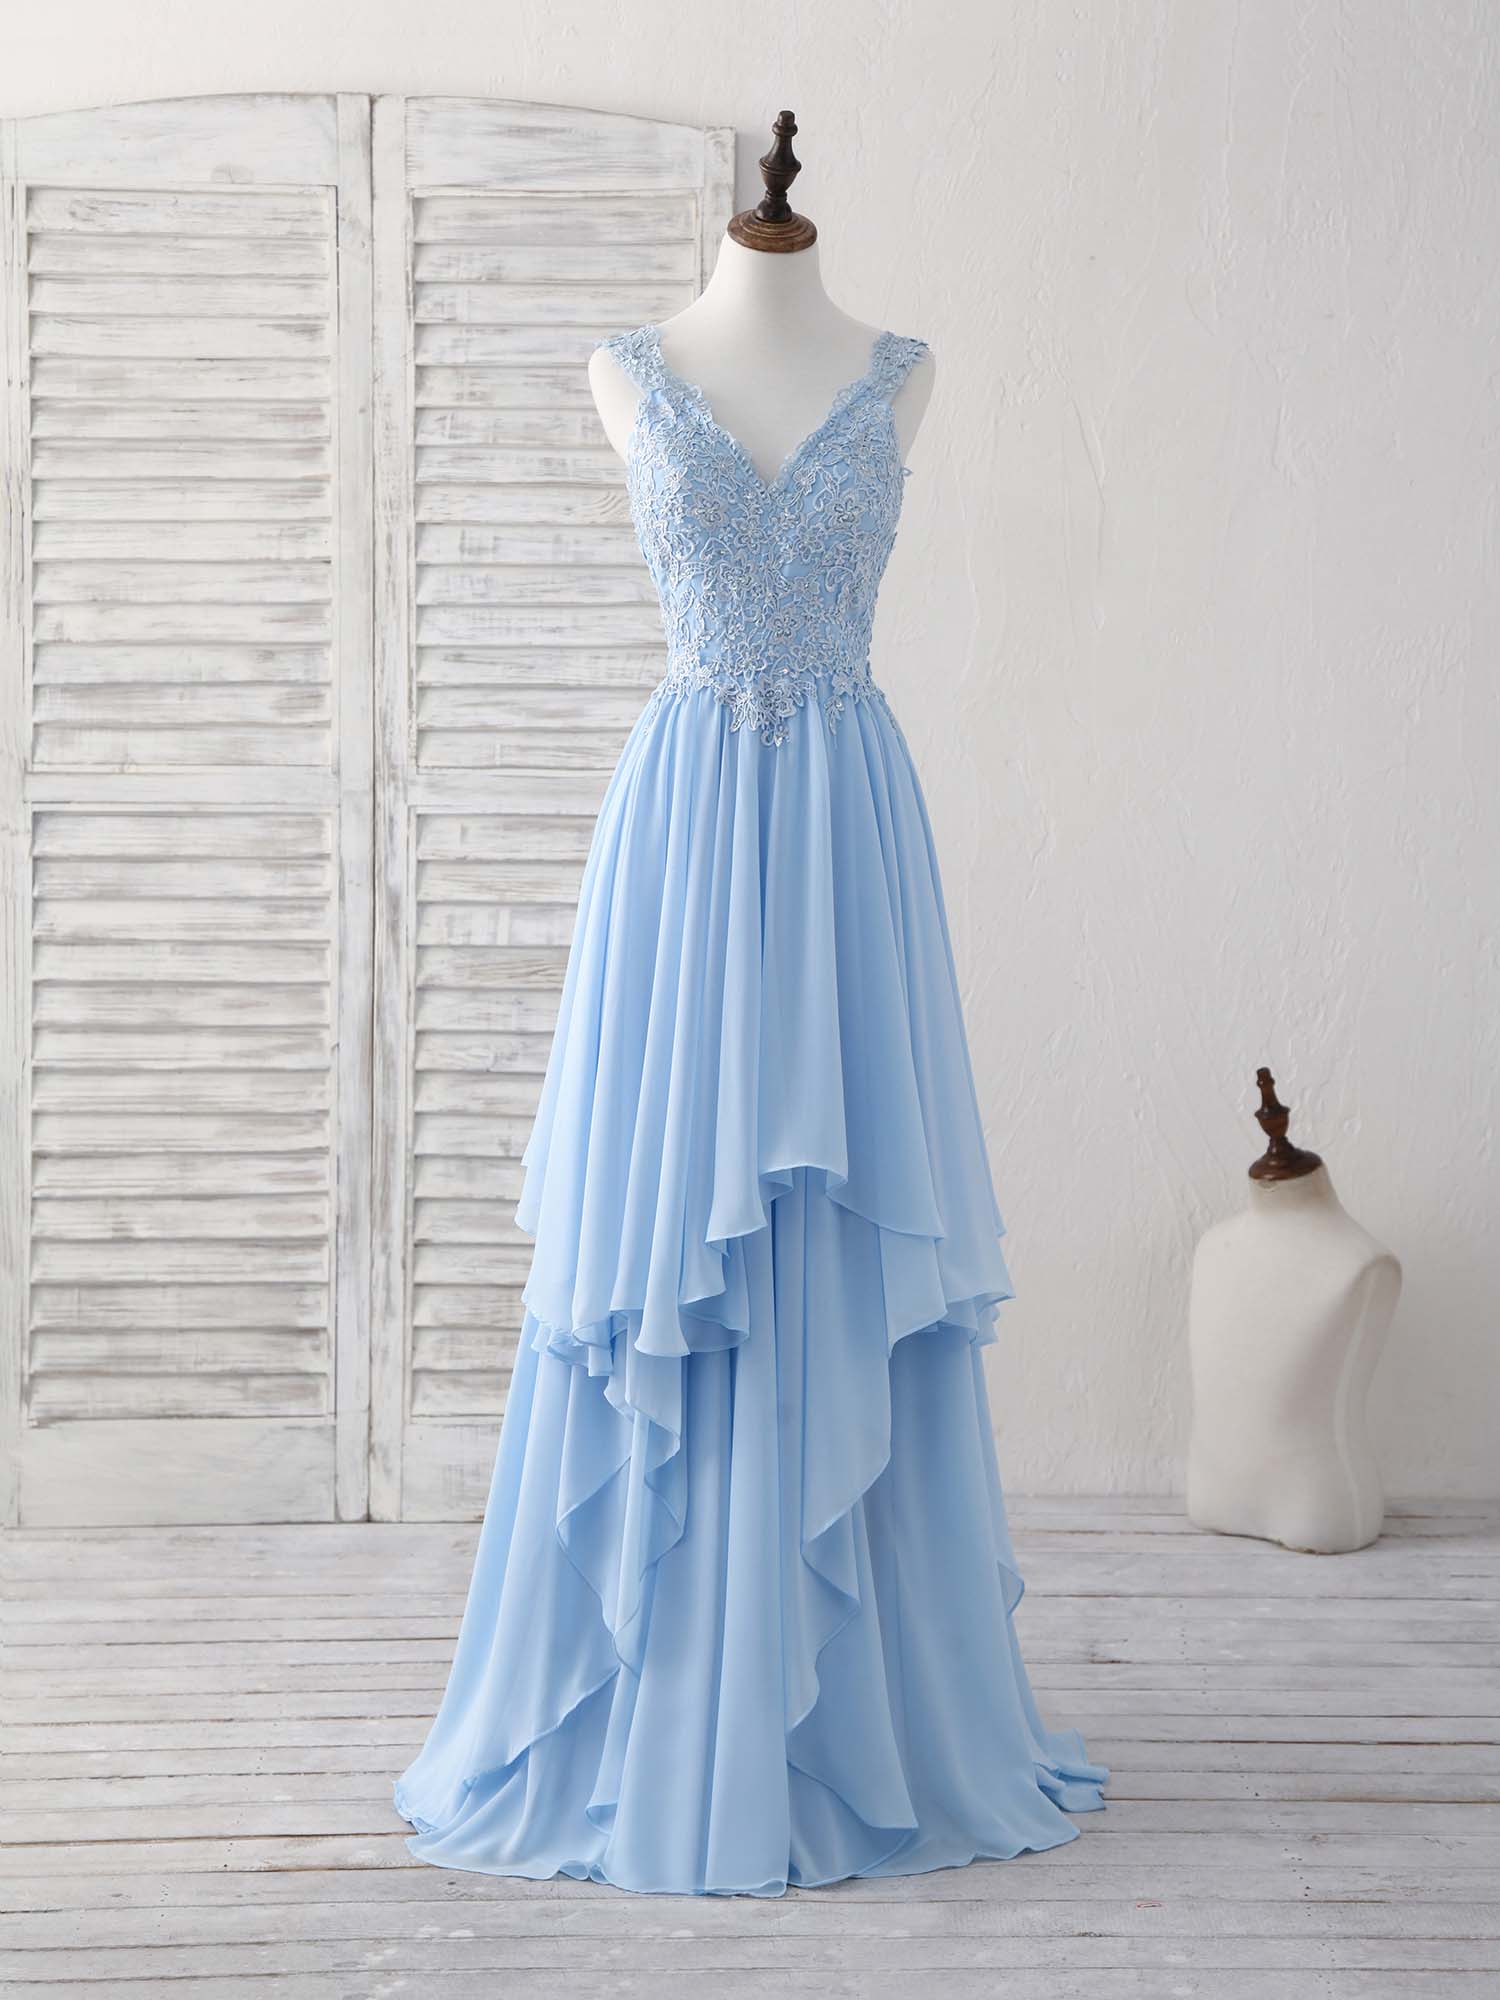 Blue V Neck Applique Chiffon Long Corset Prom Dress Lace Corset Bridesmaid Dress outfit, Party Dresses Style